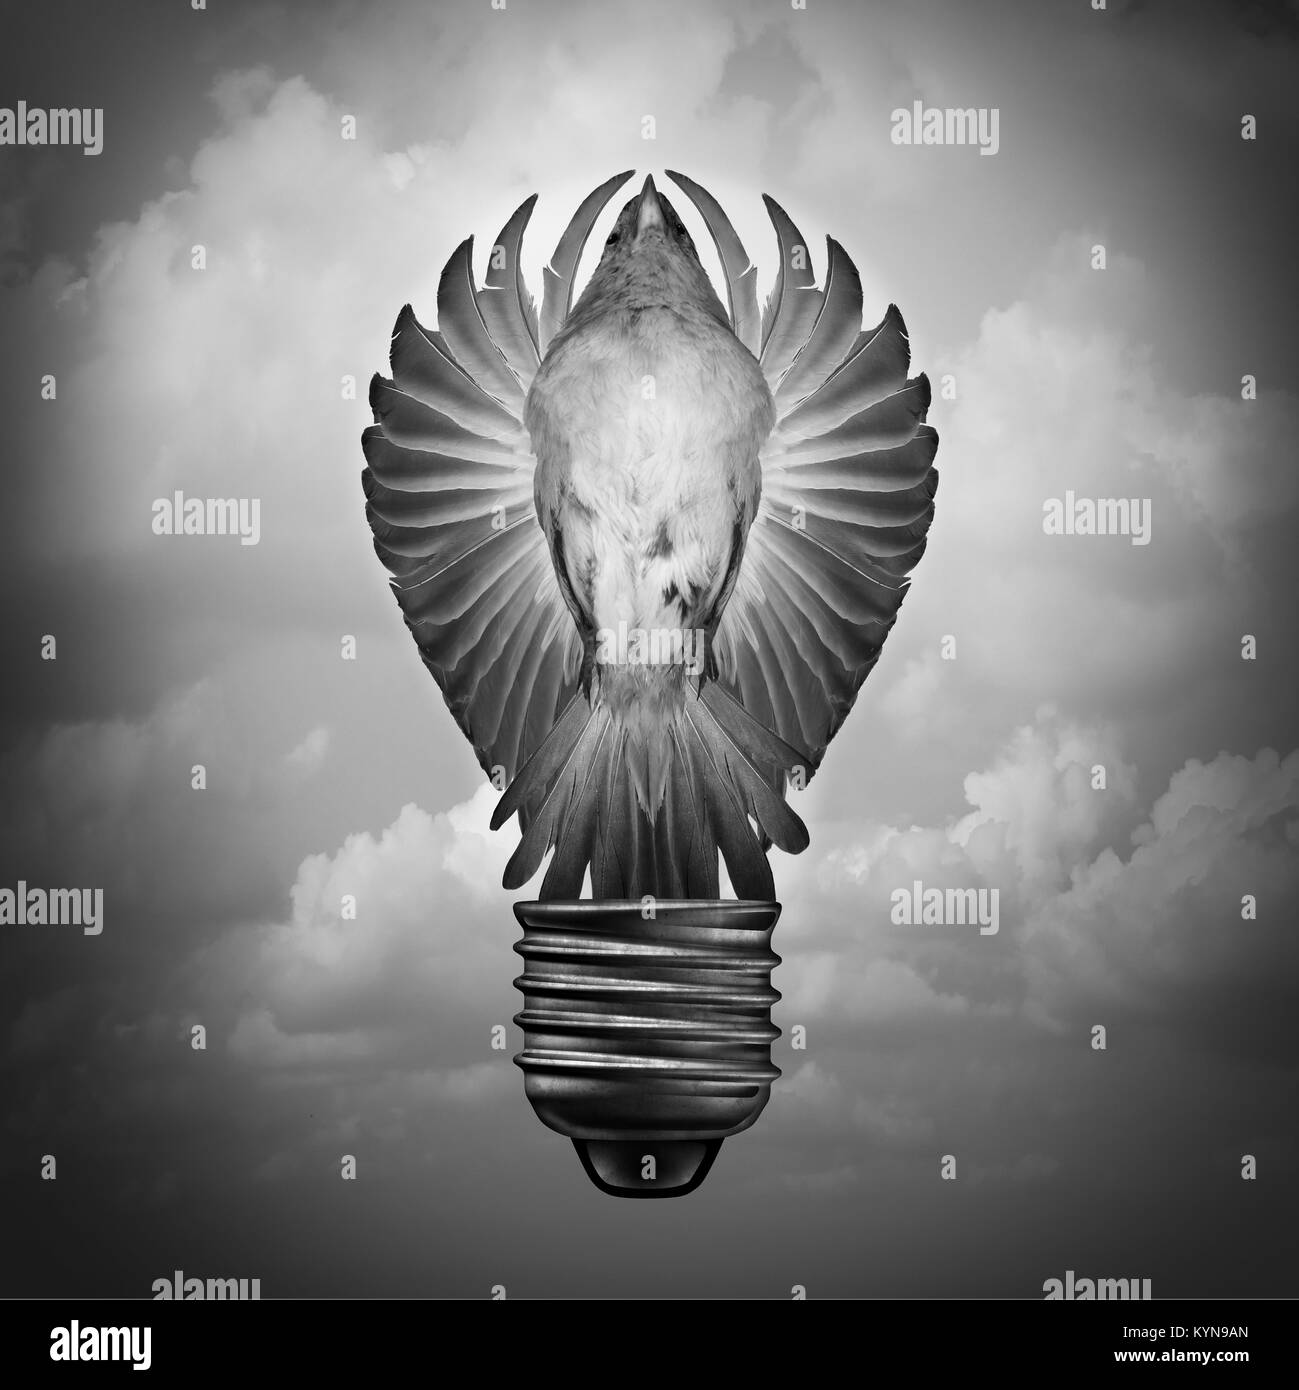 Kreatives Konzept wie eine surreale Idee und Innovation Metapher mit einem Vogel mit offenen Flügeln wie eine Glühbirne mit 3D-Illustration Elemente geprägt. Stockfoto